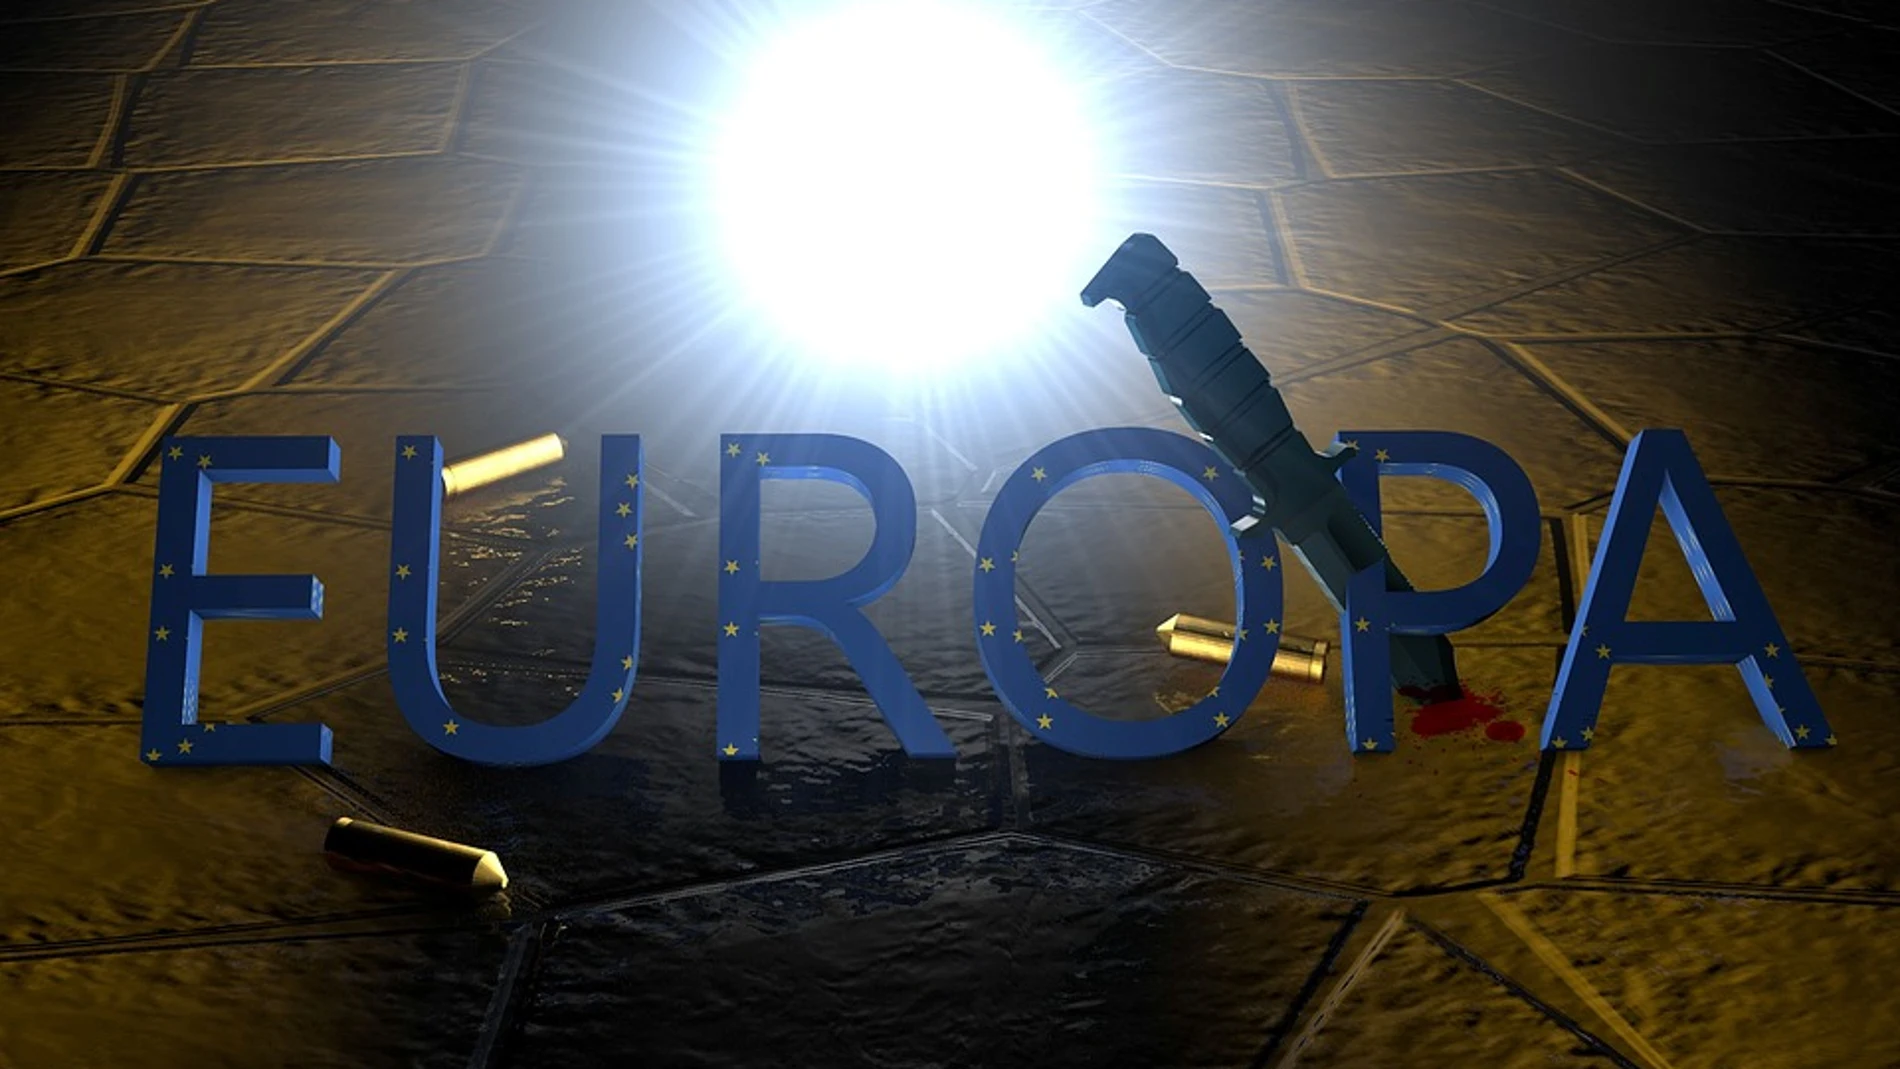 Europa diciendo no al terrorismo